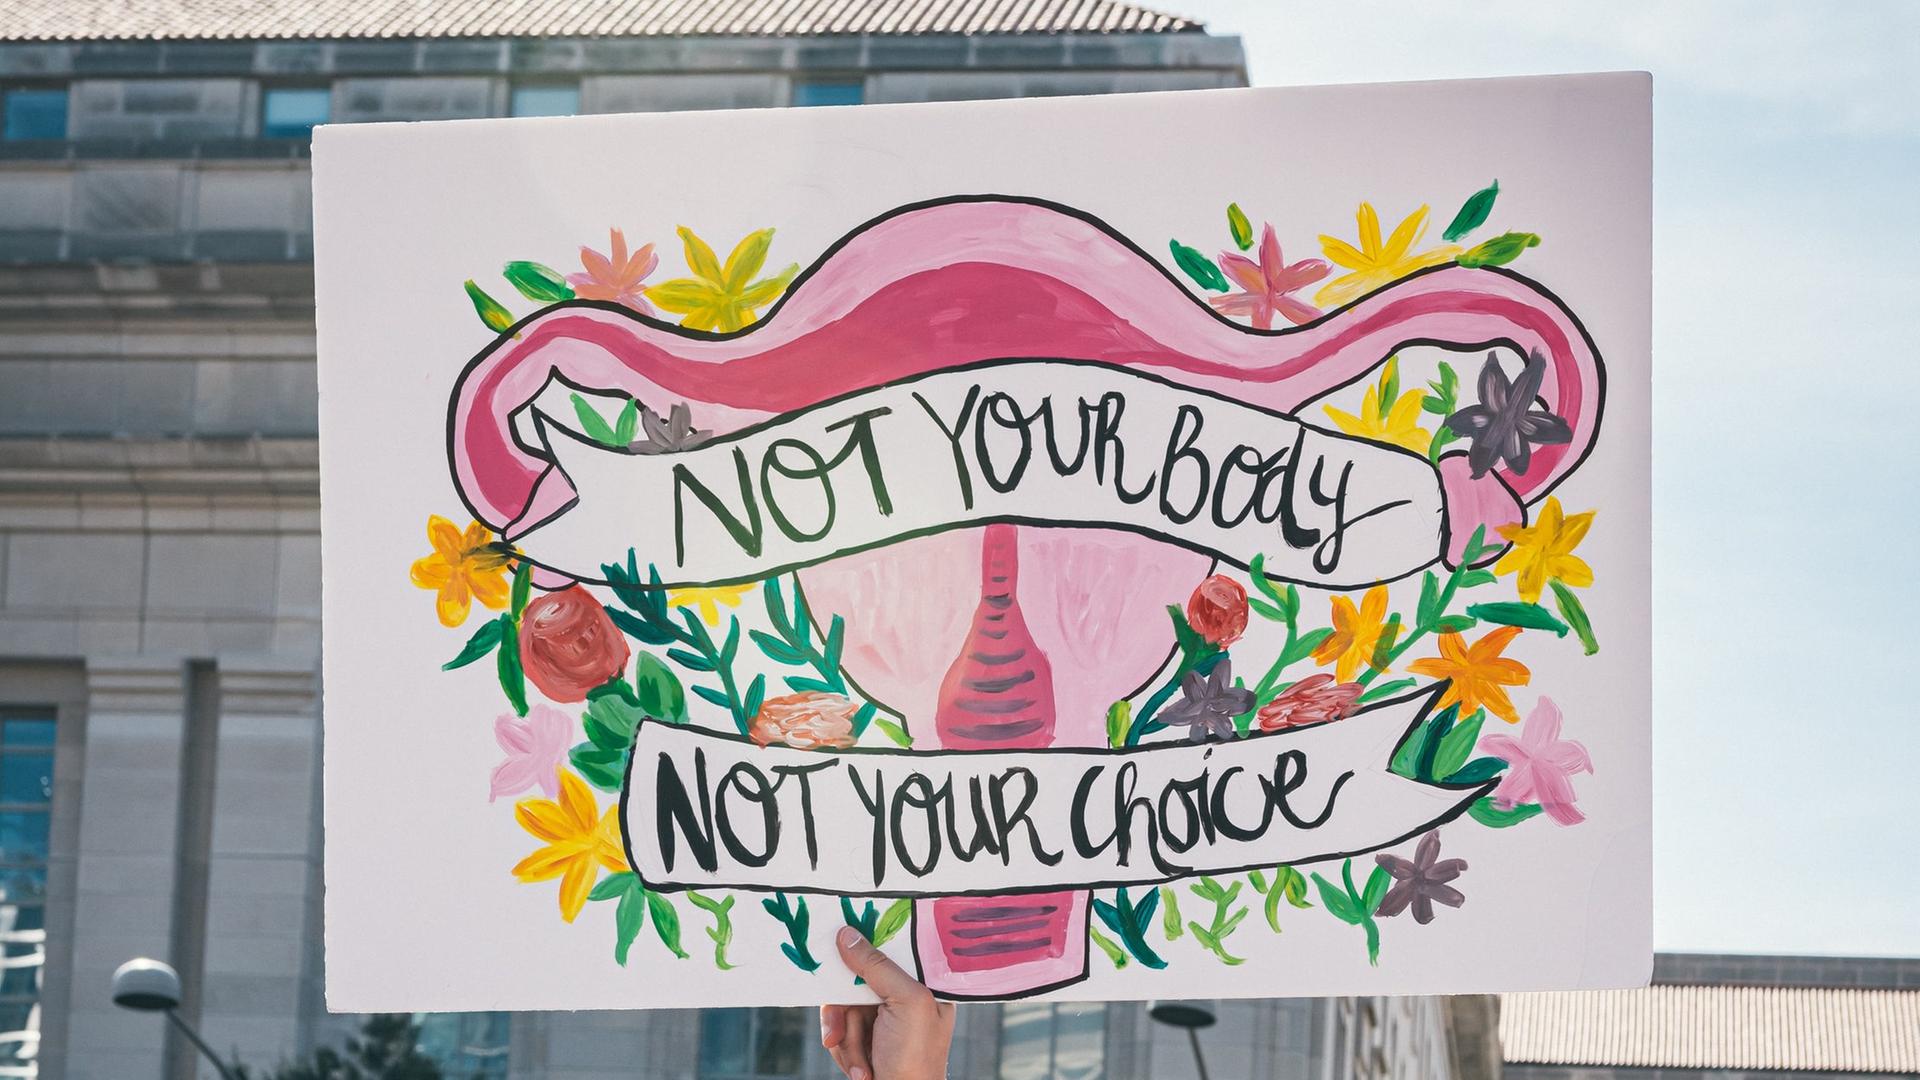 Auf einer Demonstration für Frauenrechte wird ein bunt bemaltes Plakat hochgehalten. Es zeigt die weiblichen Geschlechtsorgane umrahmt von Blumen mit der Aufschrift: "Not your body - not your choice".